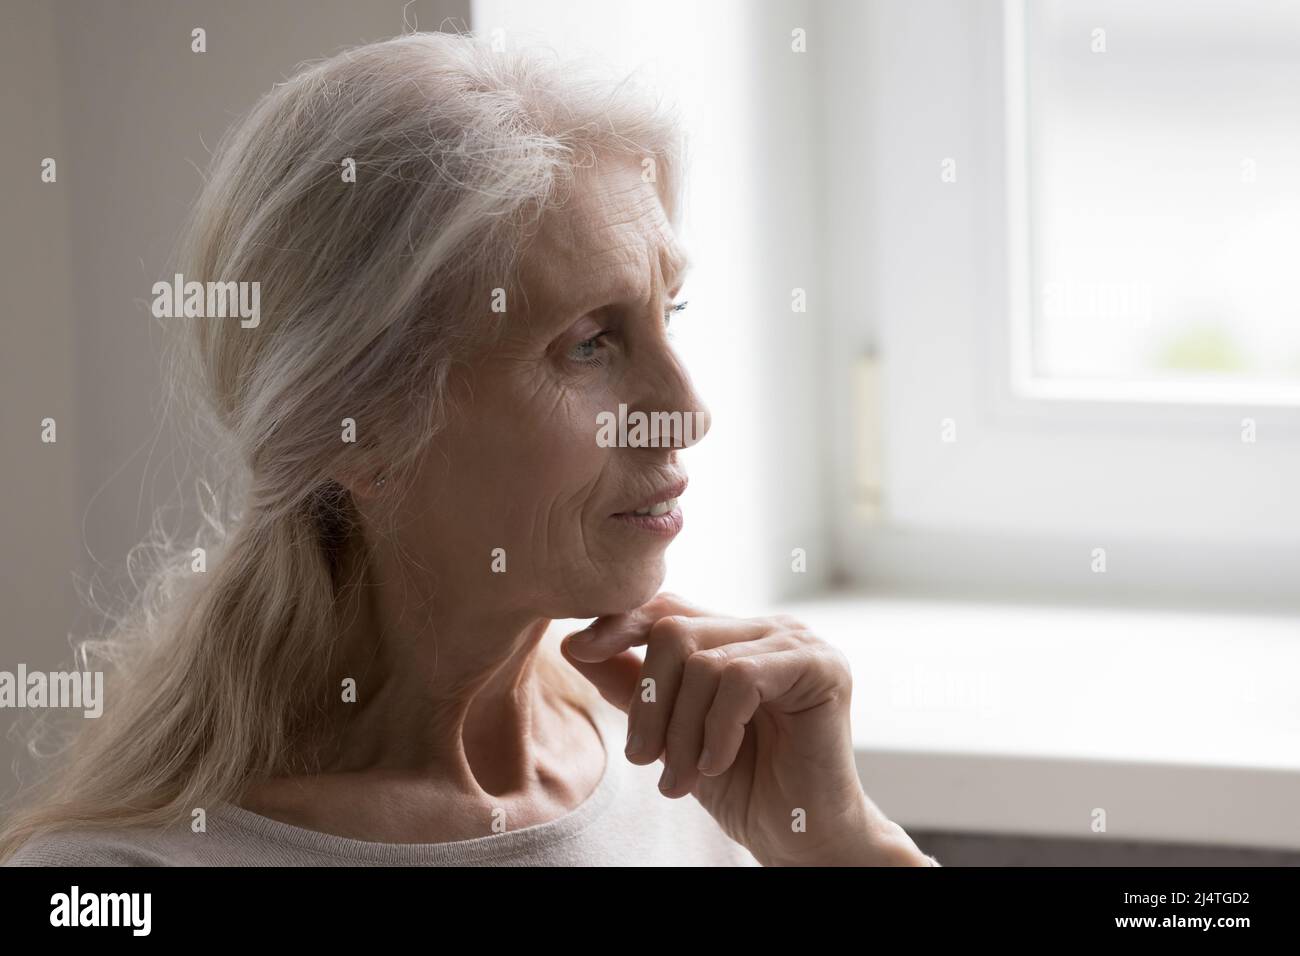 Nahaufnahme Profil Gesichtsansicht nachdenklich ruhig reif grauhaarige Frau Stockfoto